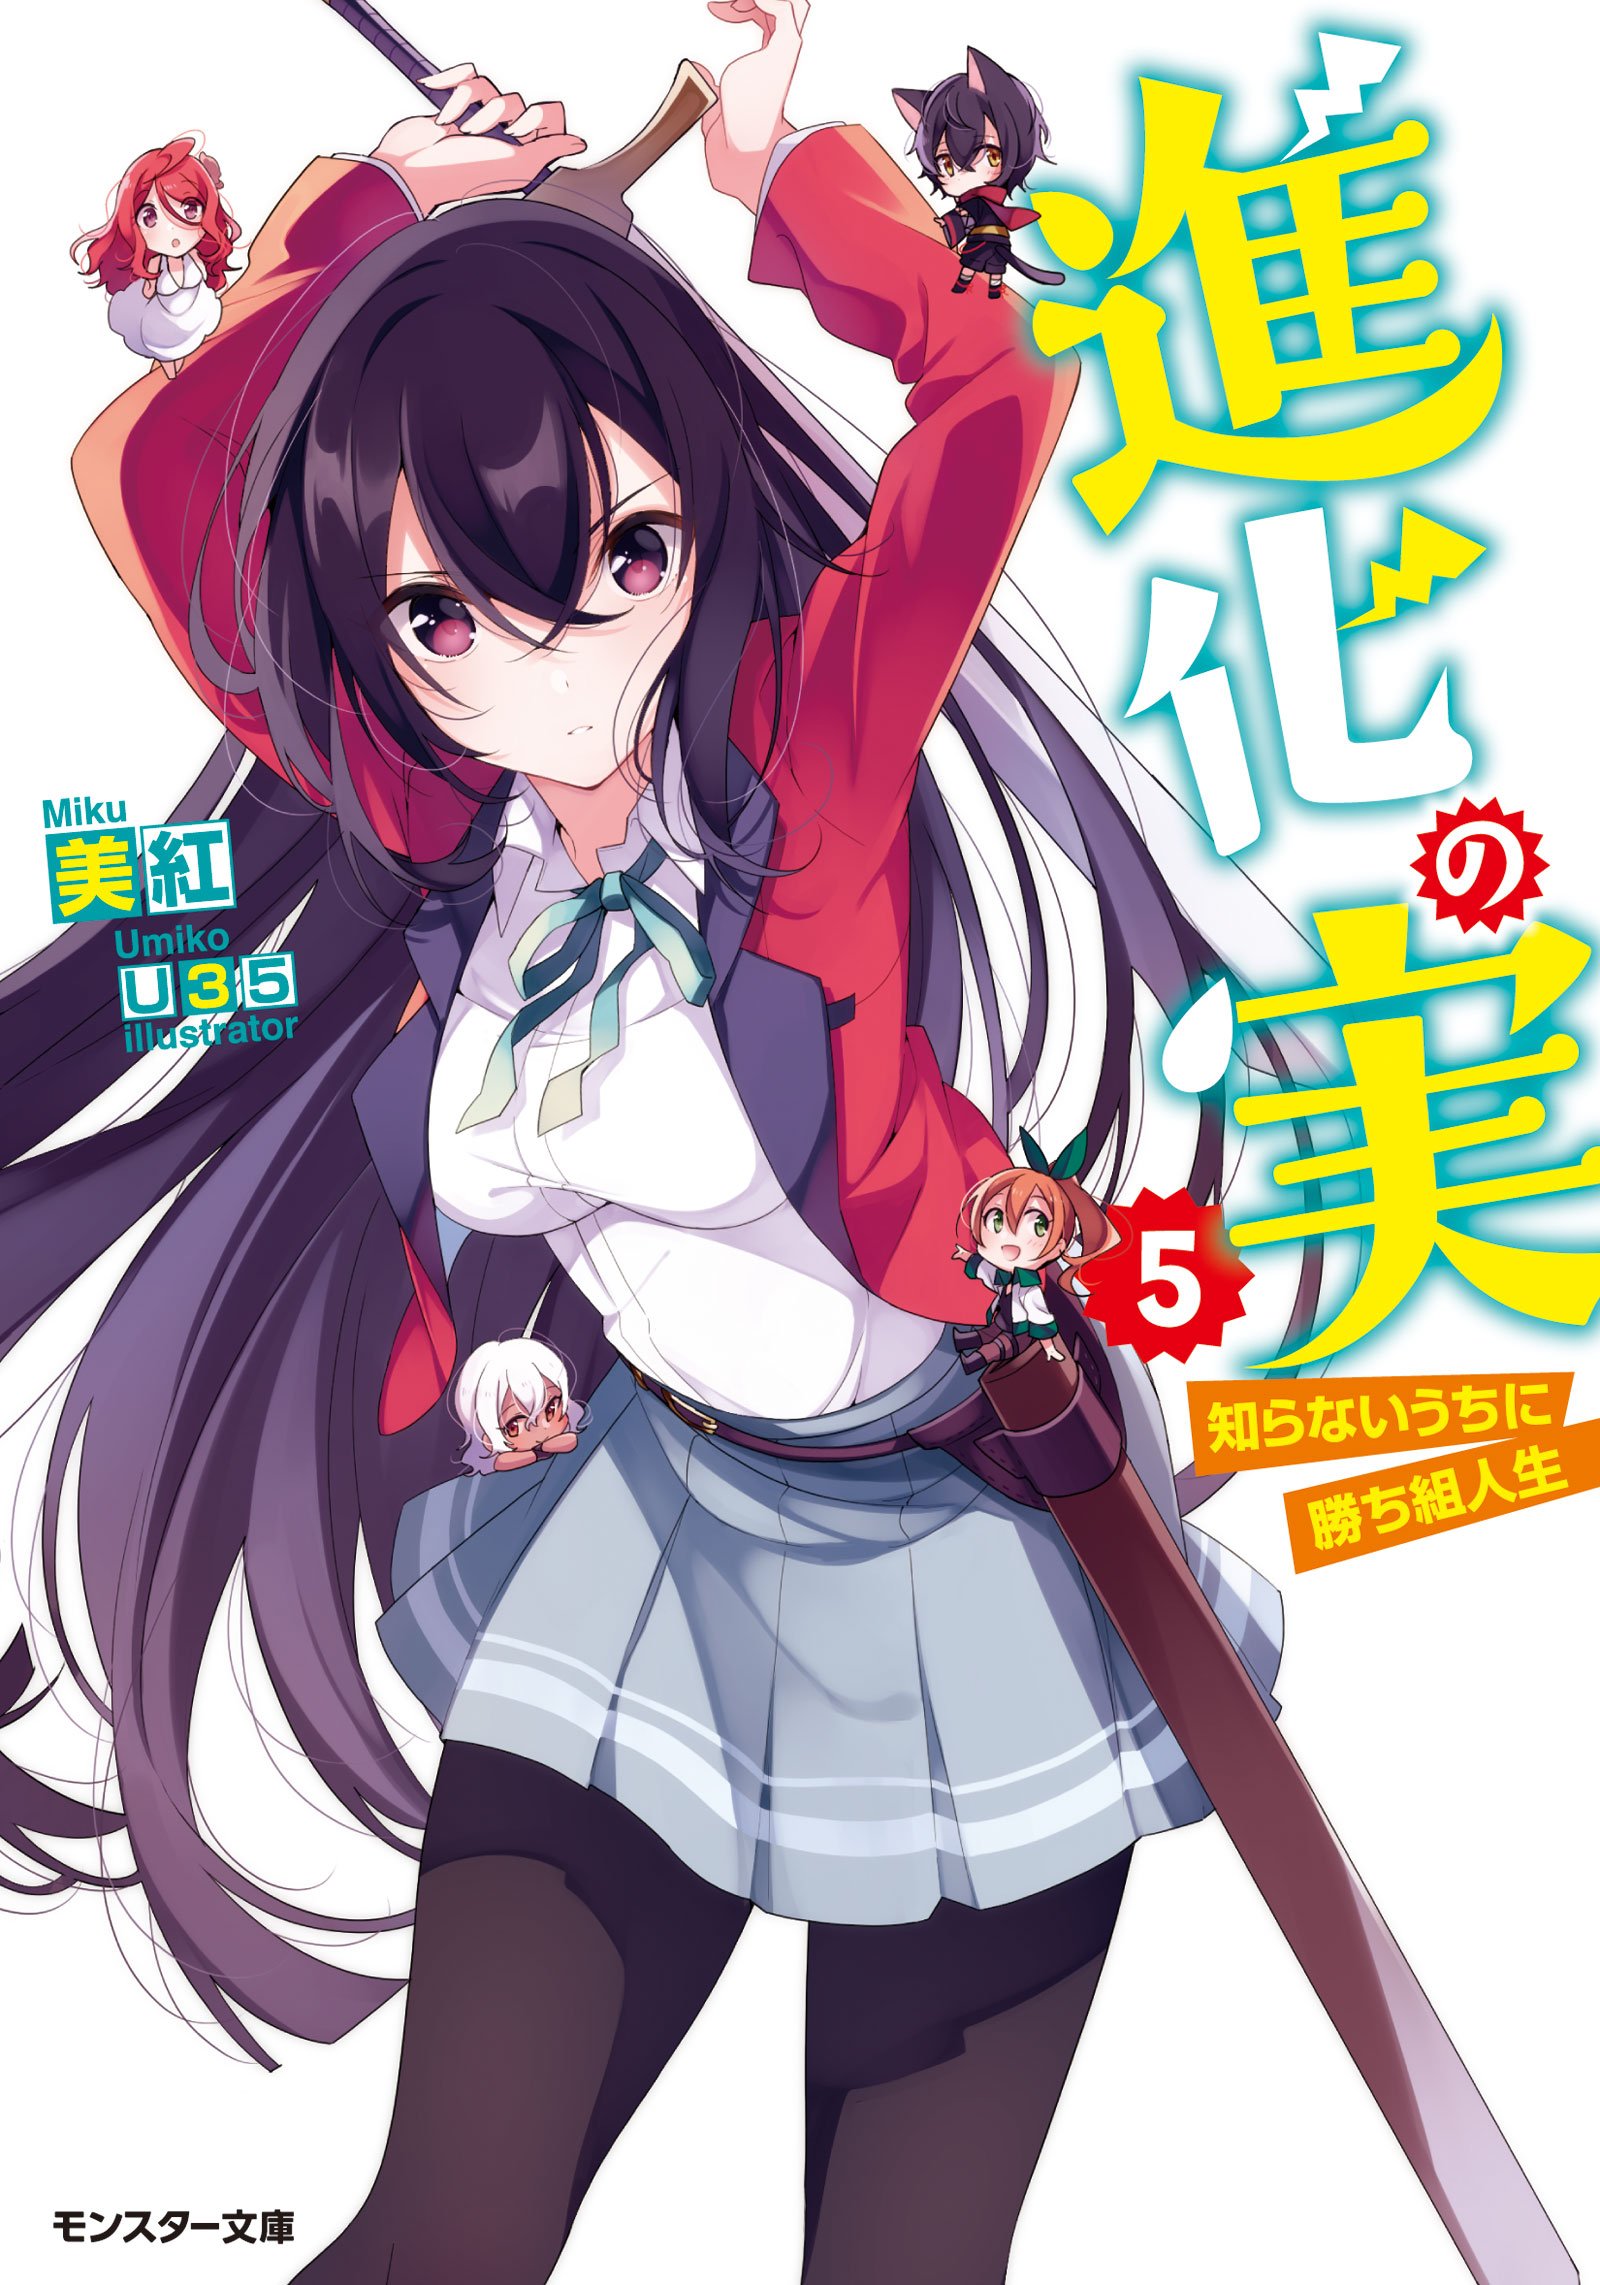 Light Novel Volume 5 | Shinka no Mi Wiki | Fandom